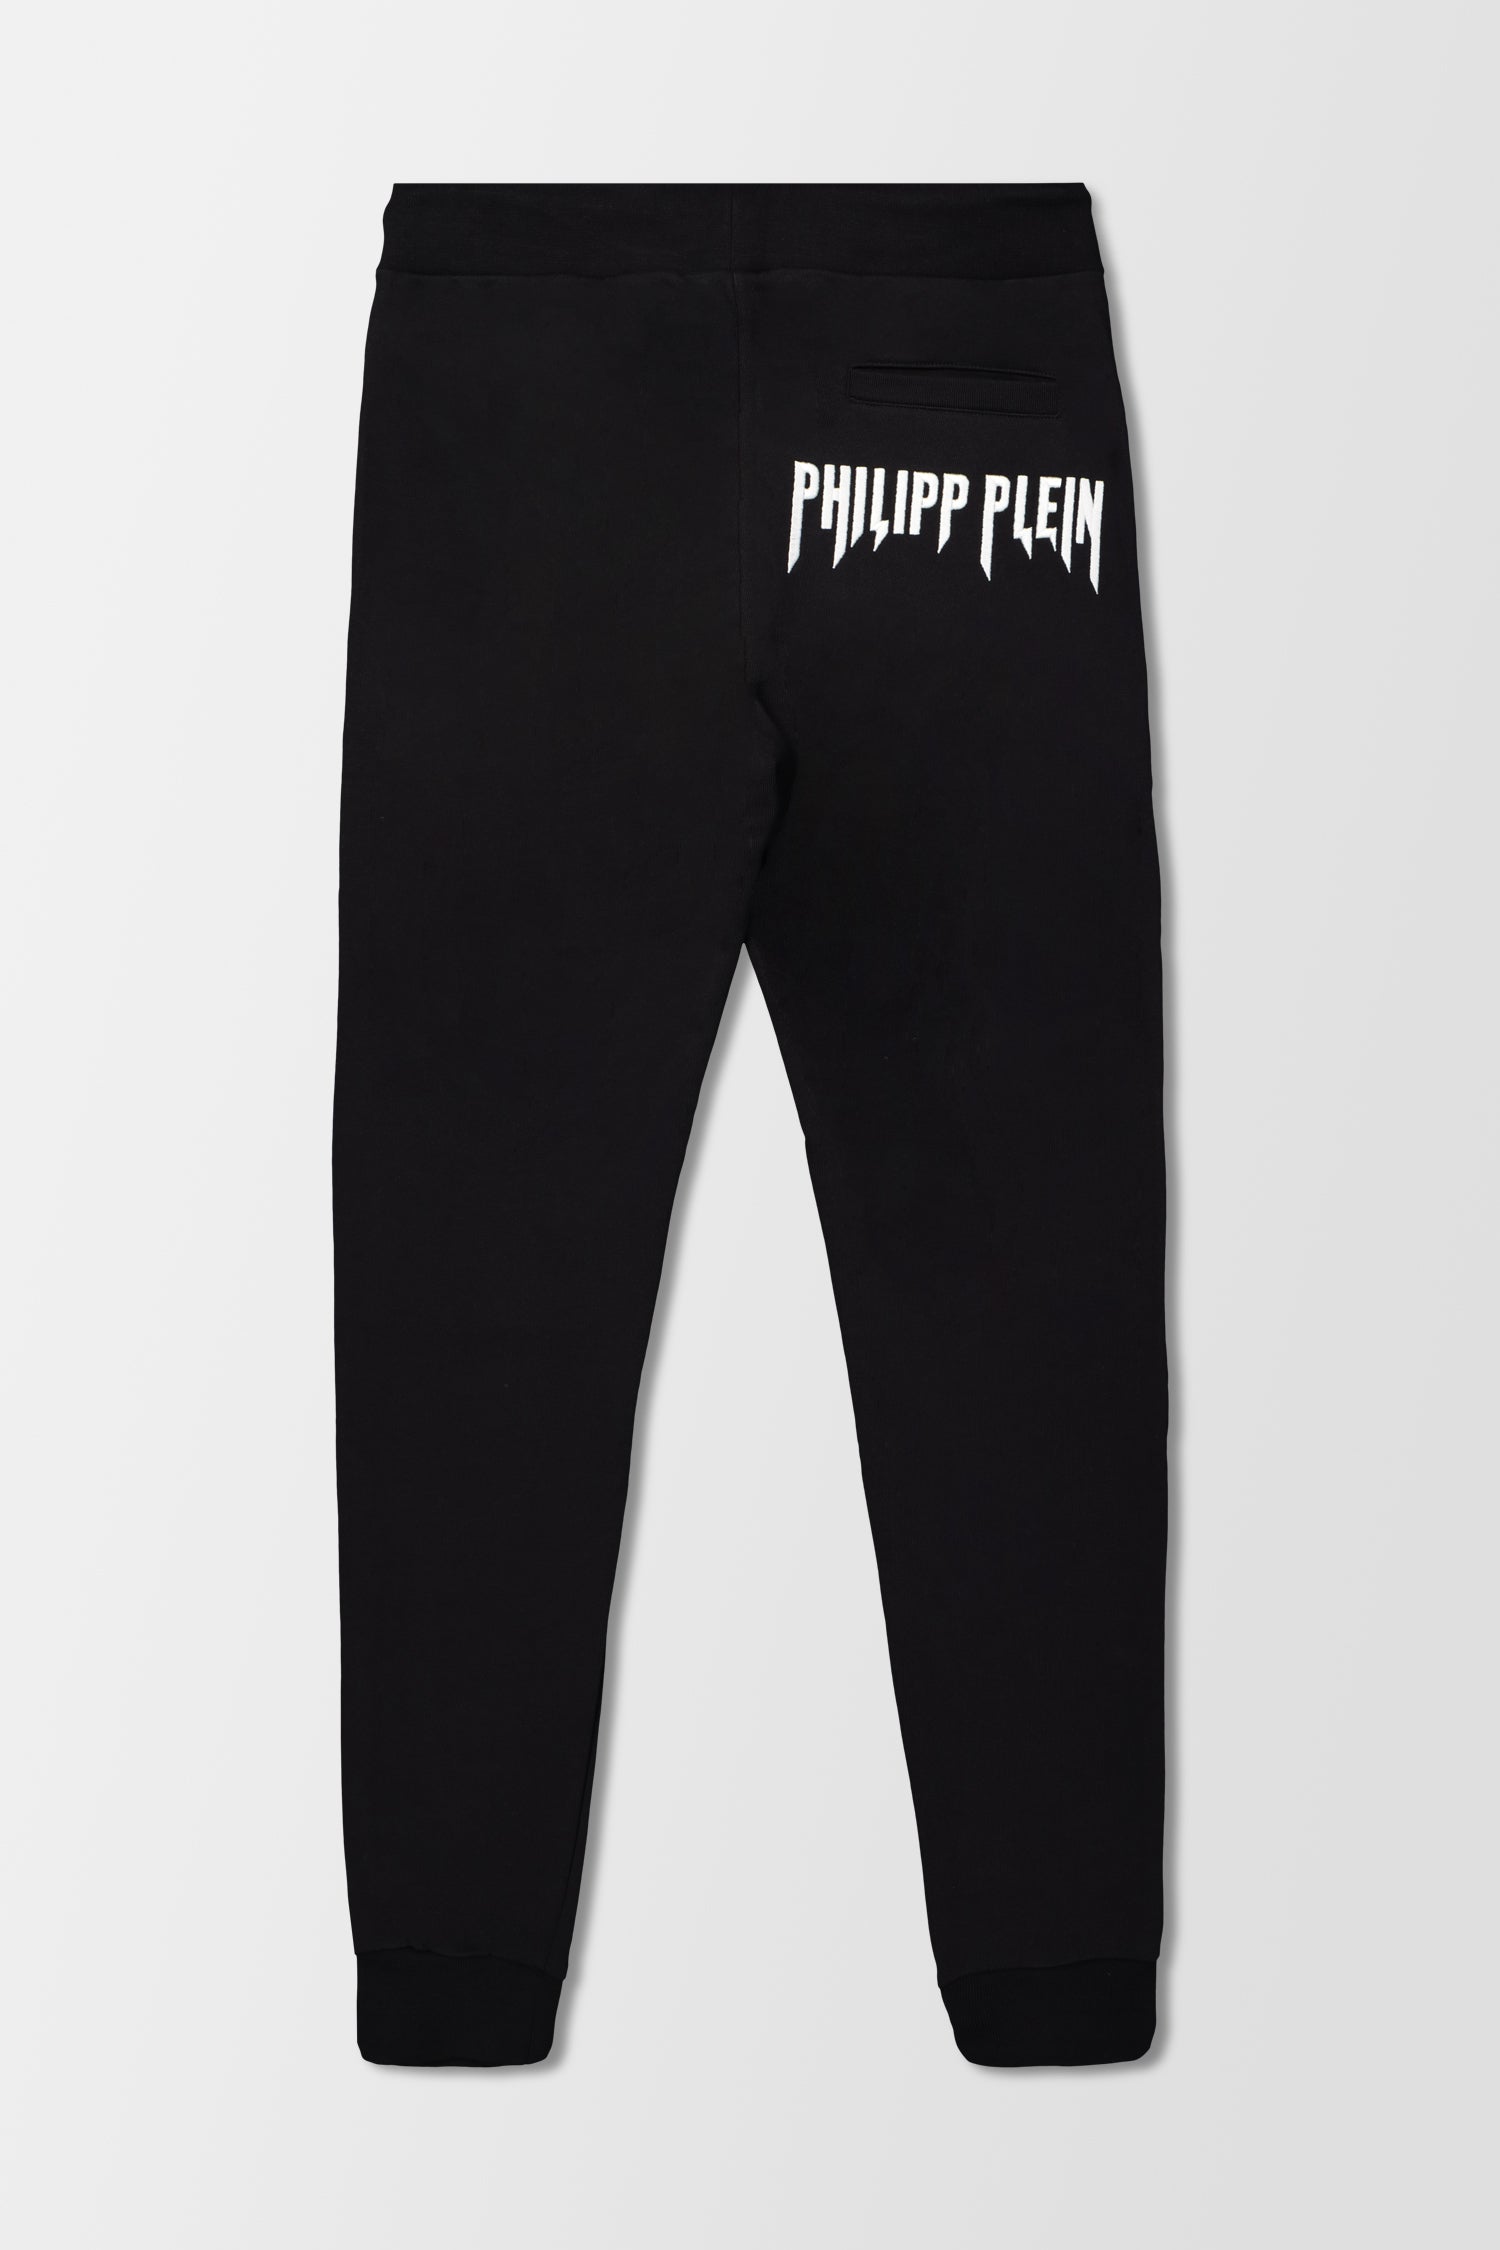 Philipp Plein Black Vampire Jogging Trousers